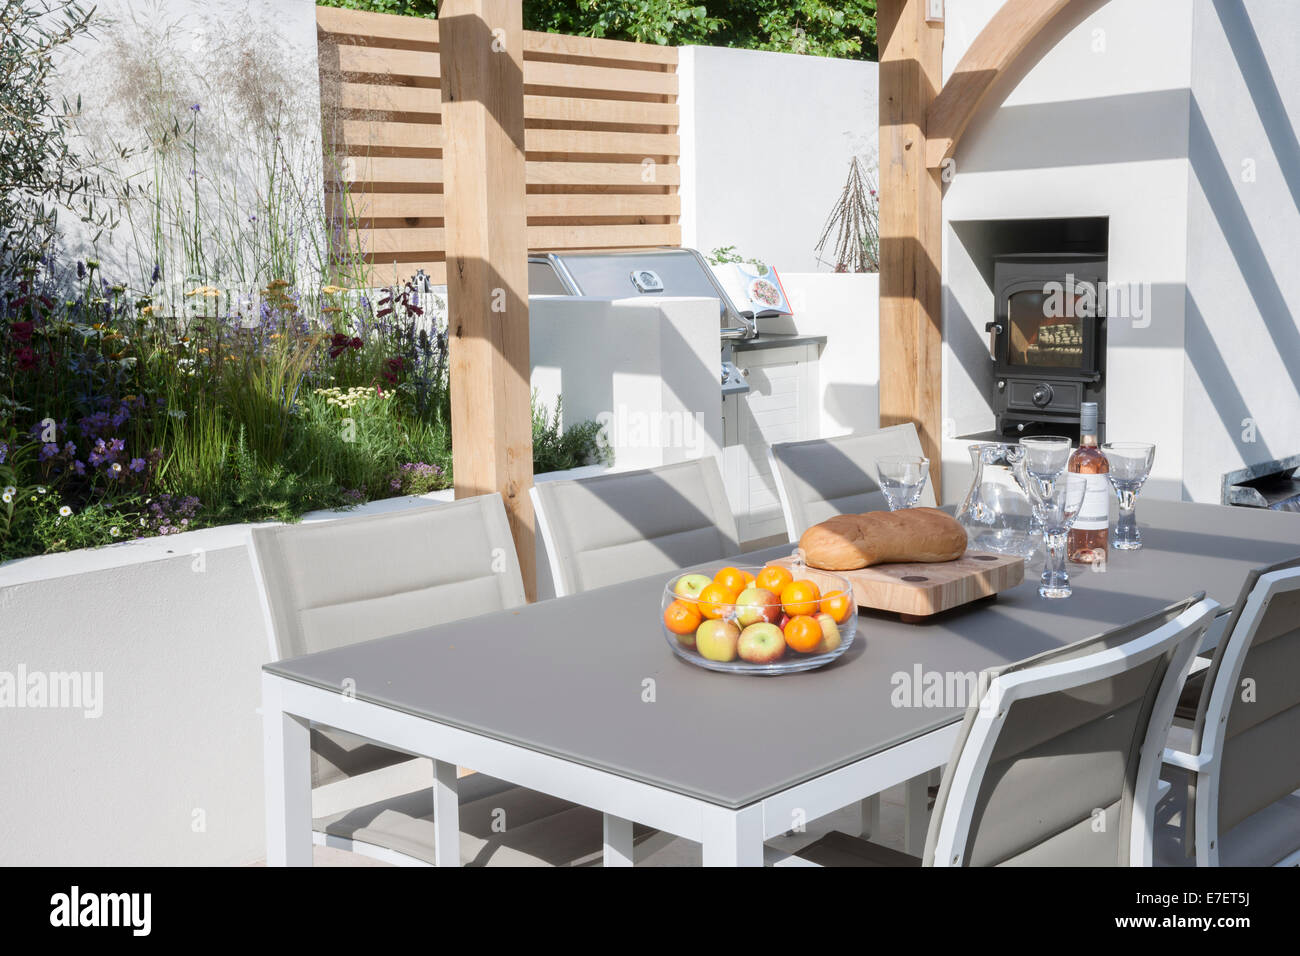 Garten - Al Fresco - Blick auf den modernen Garten Essensmöbel Wohnbereich Terrasse mit Tischen und Stühlen Holzofen im Freien Großbritannien Stockfoto